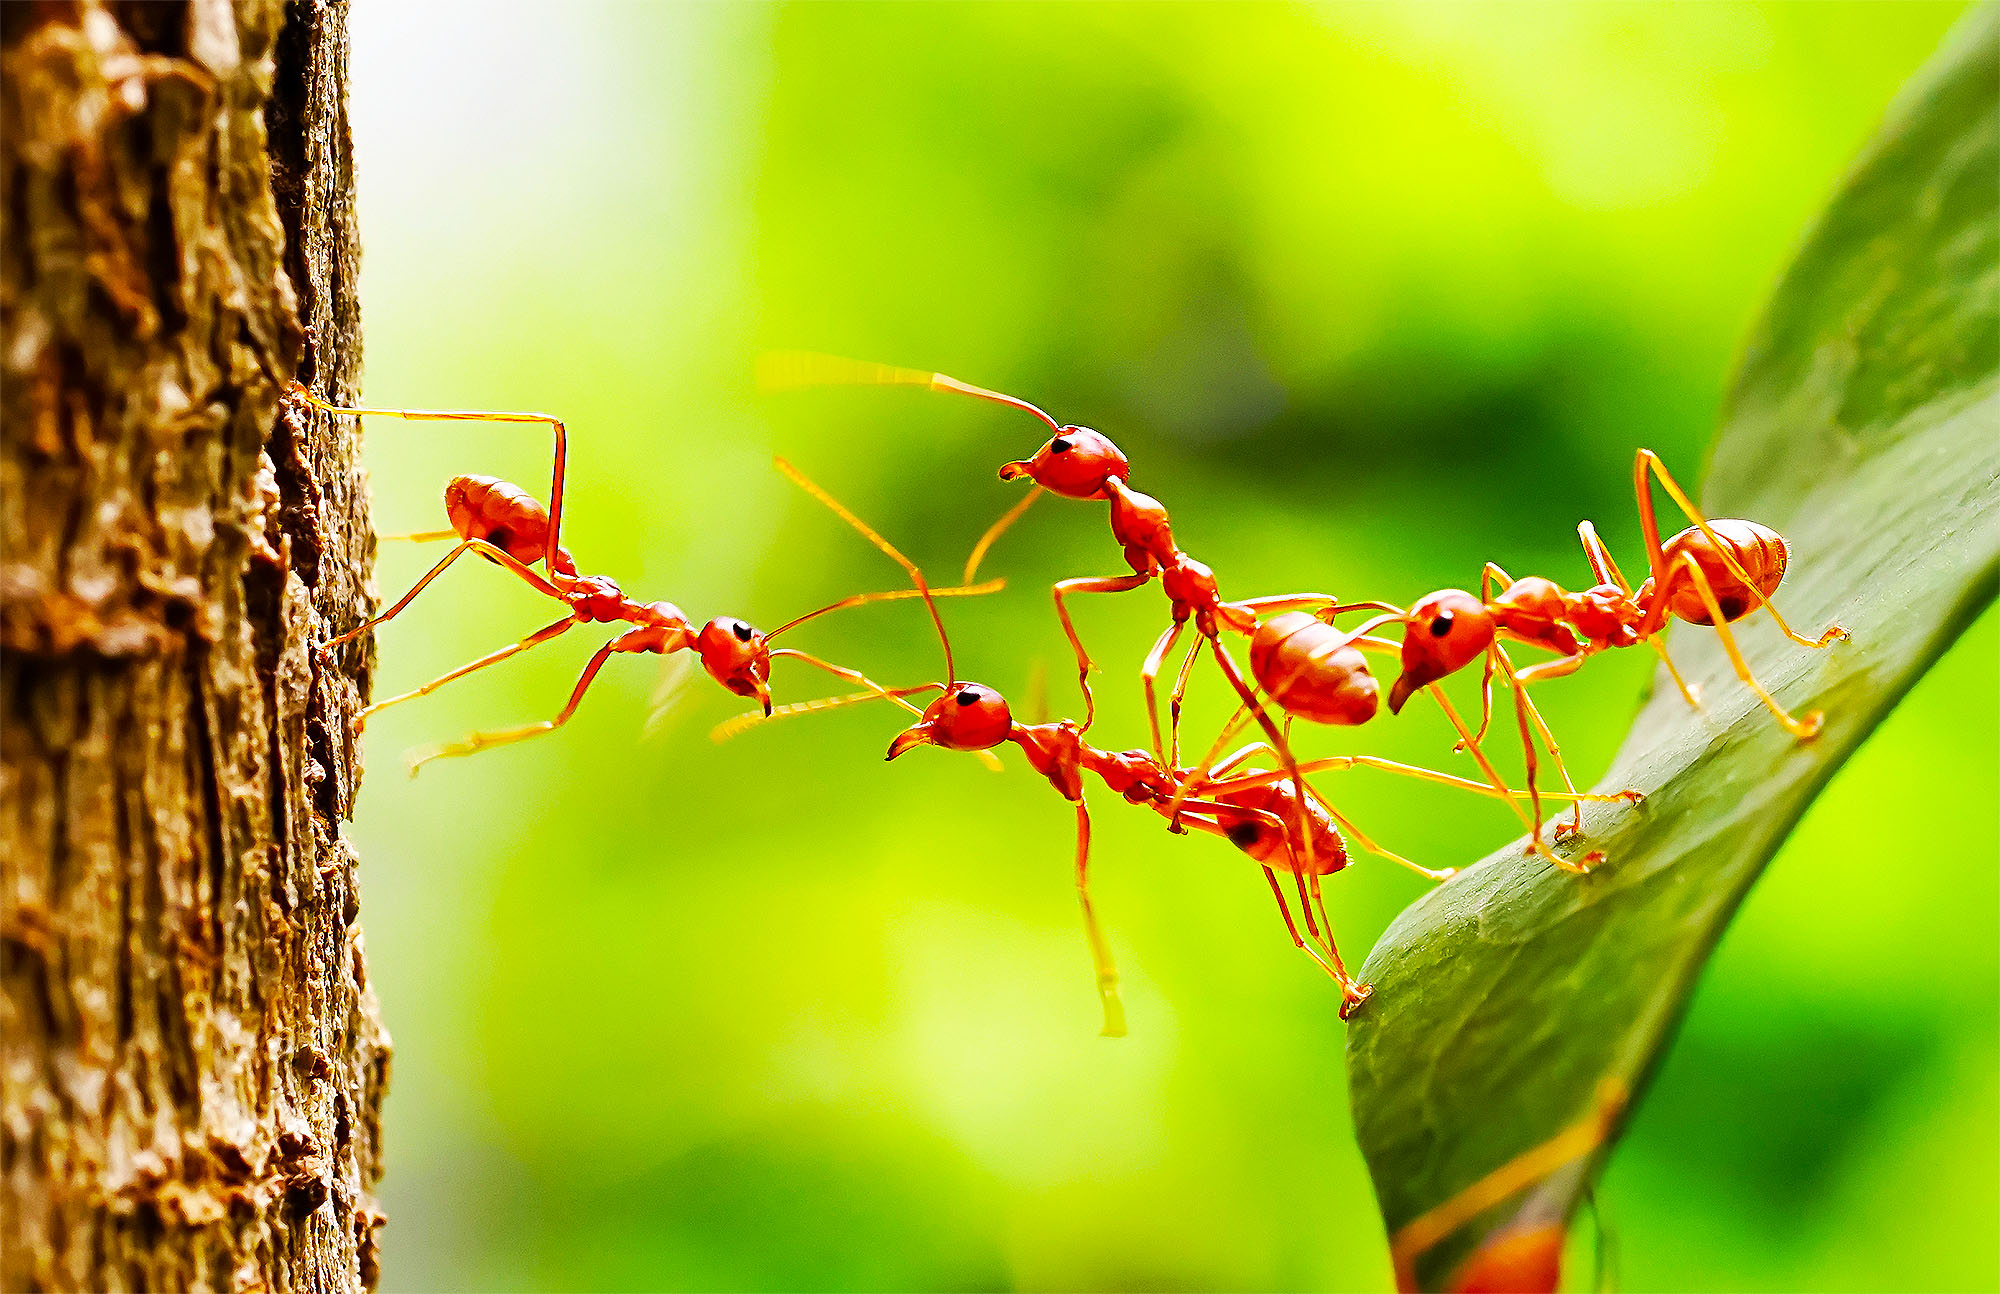 Les fourmis envahissent la France, 5 infos pour comprendre en quoi